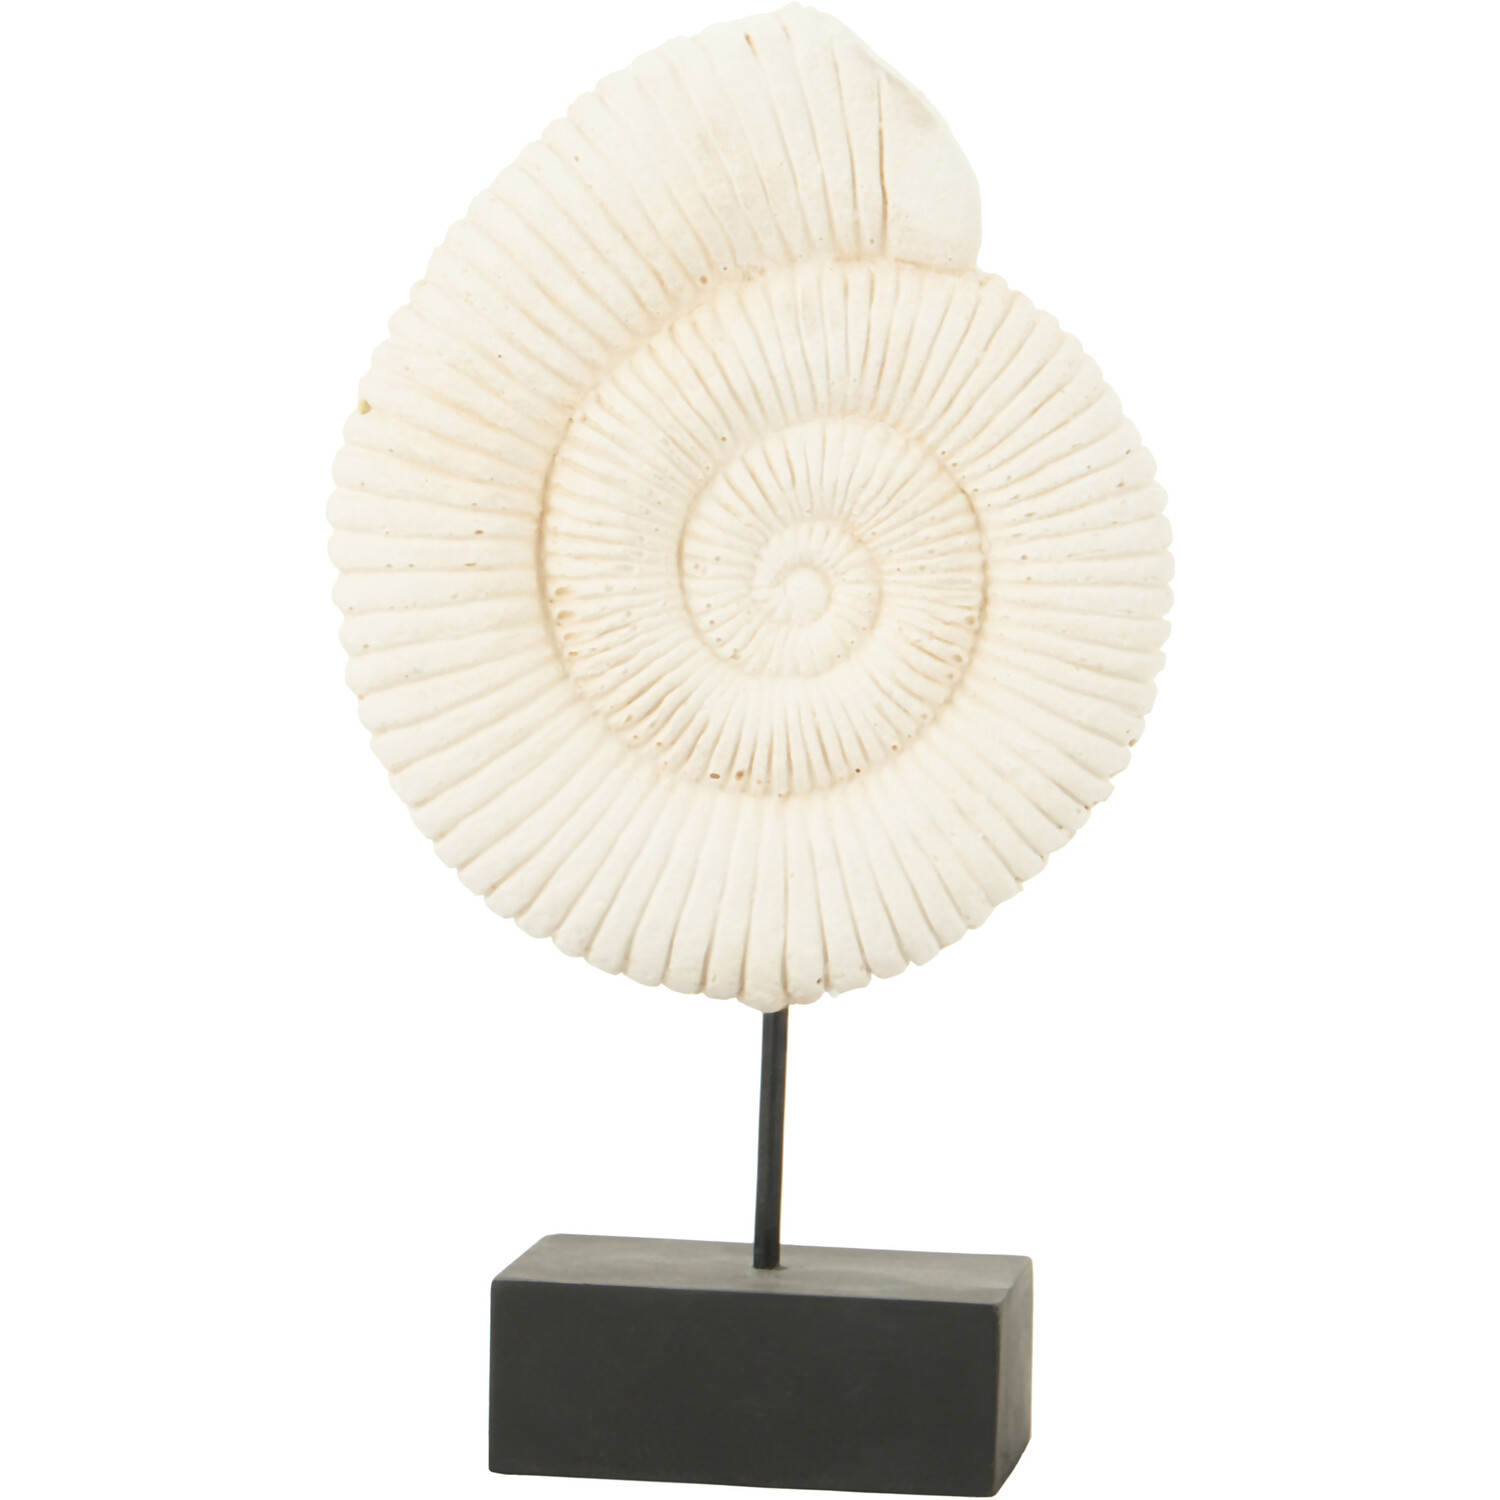 Mari Shell Ornament - White Image 1